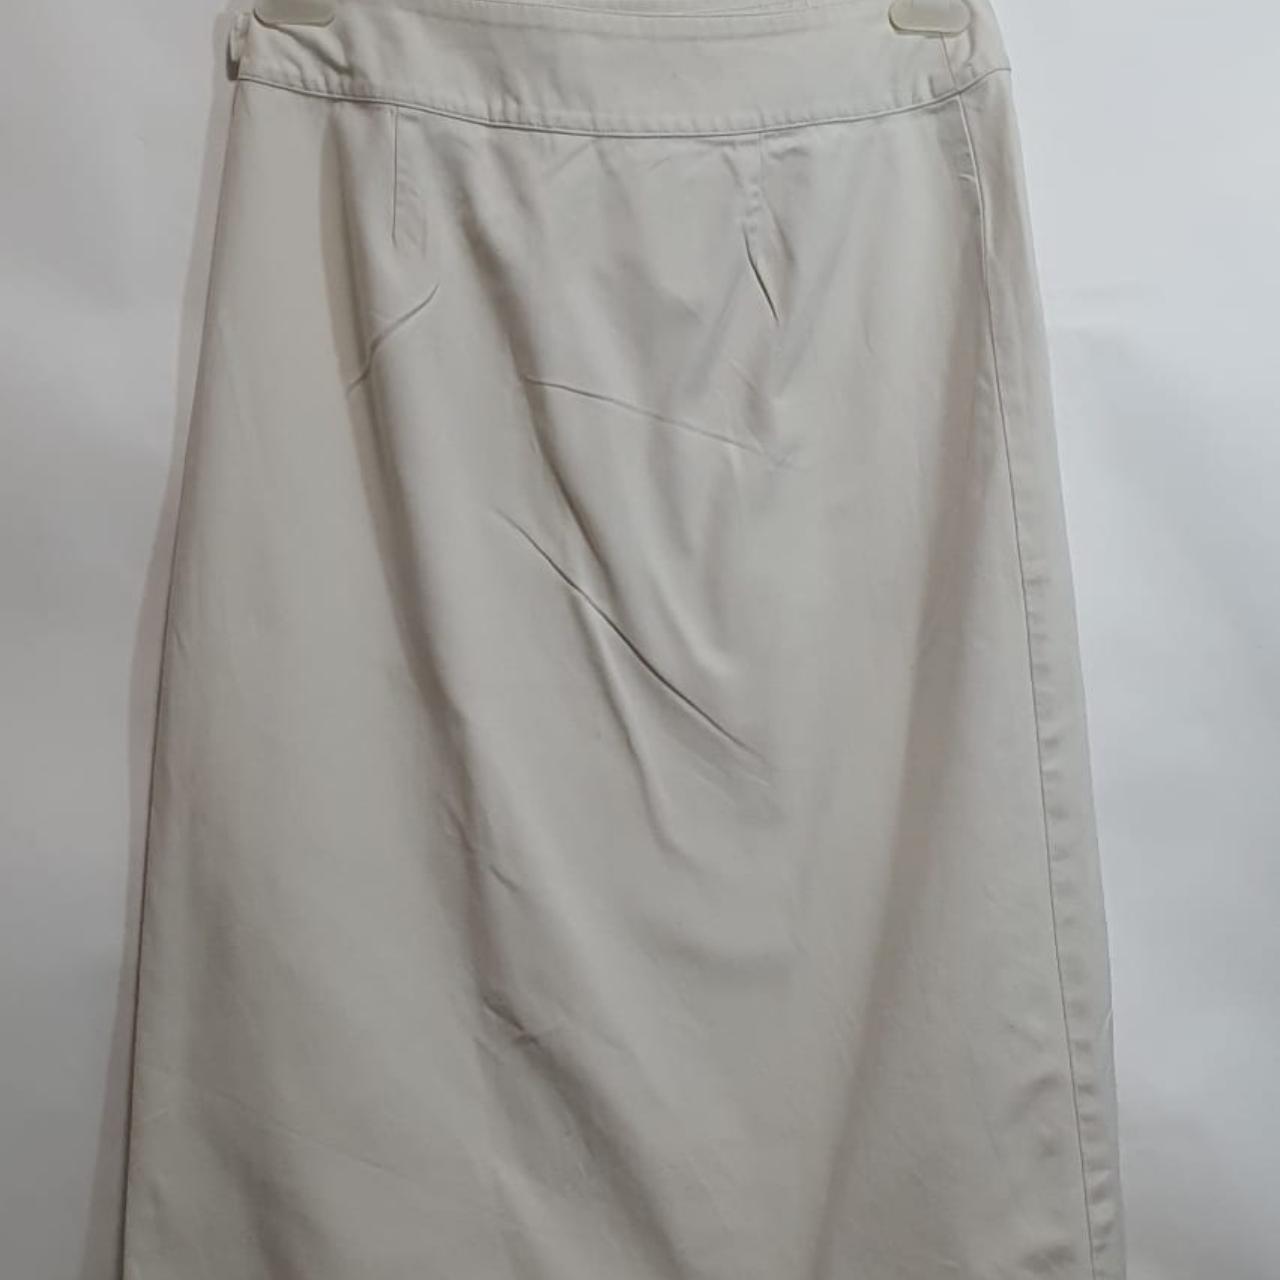 Talbots Women's White Skirt (2)